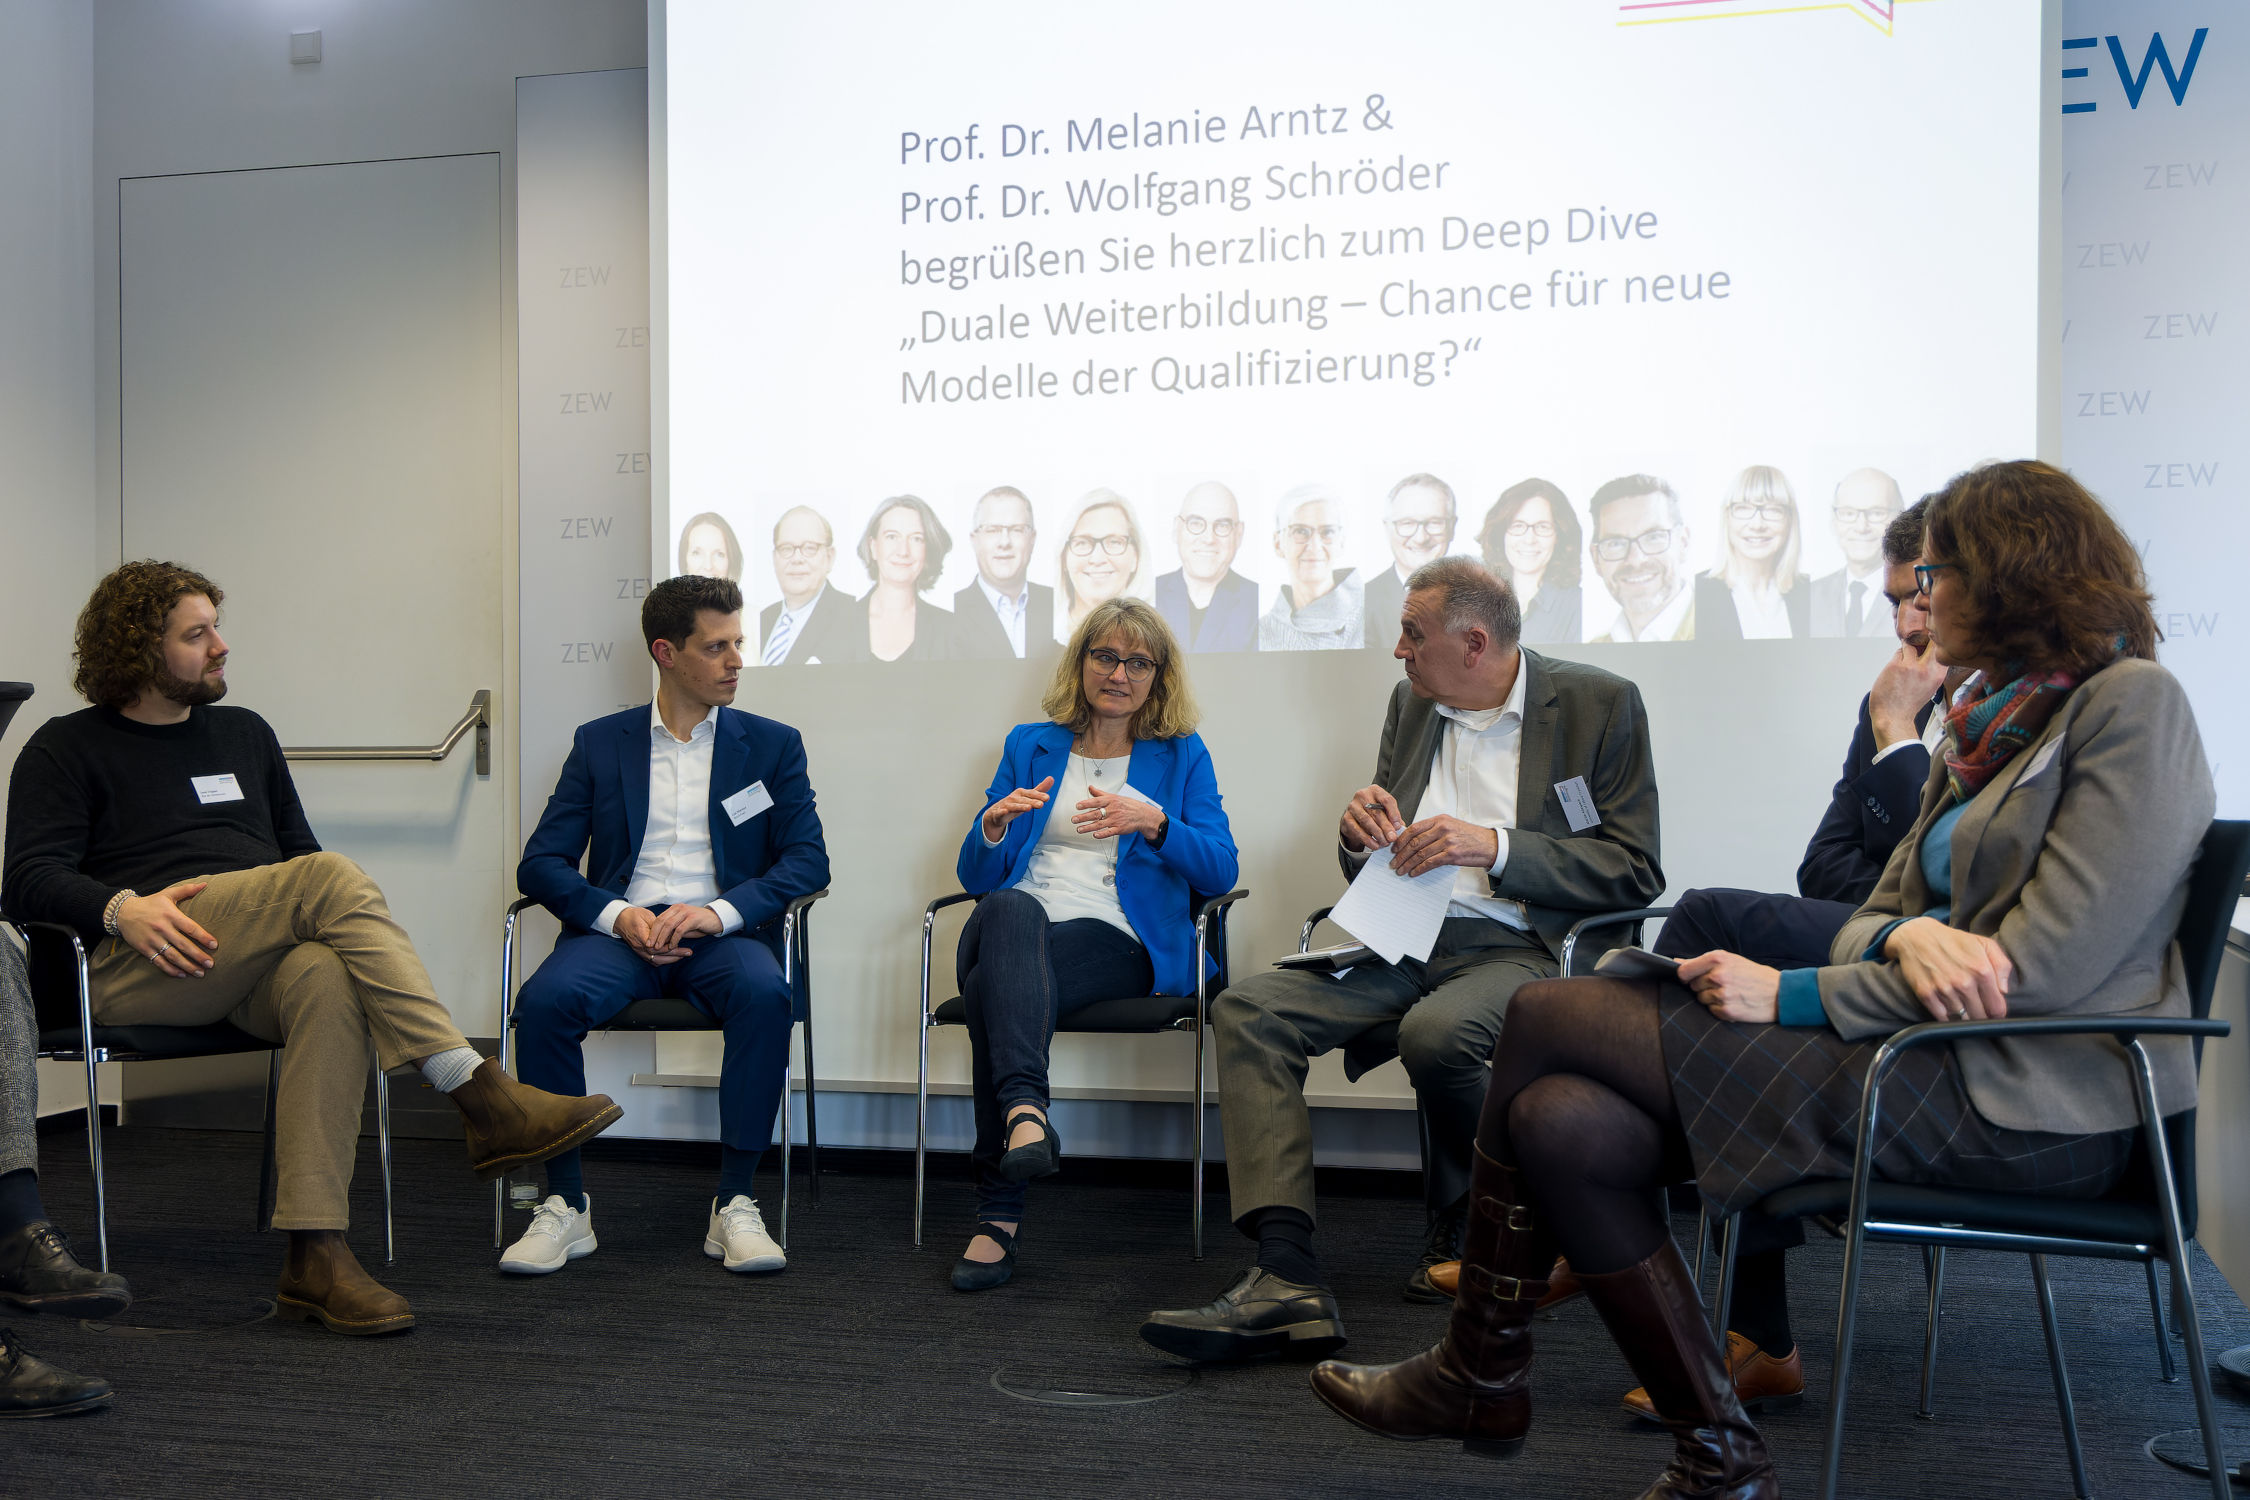 Panel-Diskussion, von links nach rechts: Leon Trippel, Leo Marose, Regina Paulitz, Prof. Dr. Martin Allespach, Dr. Nicolas Echarti, Prof. Dr. Melanie Arntz